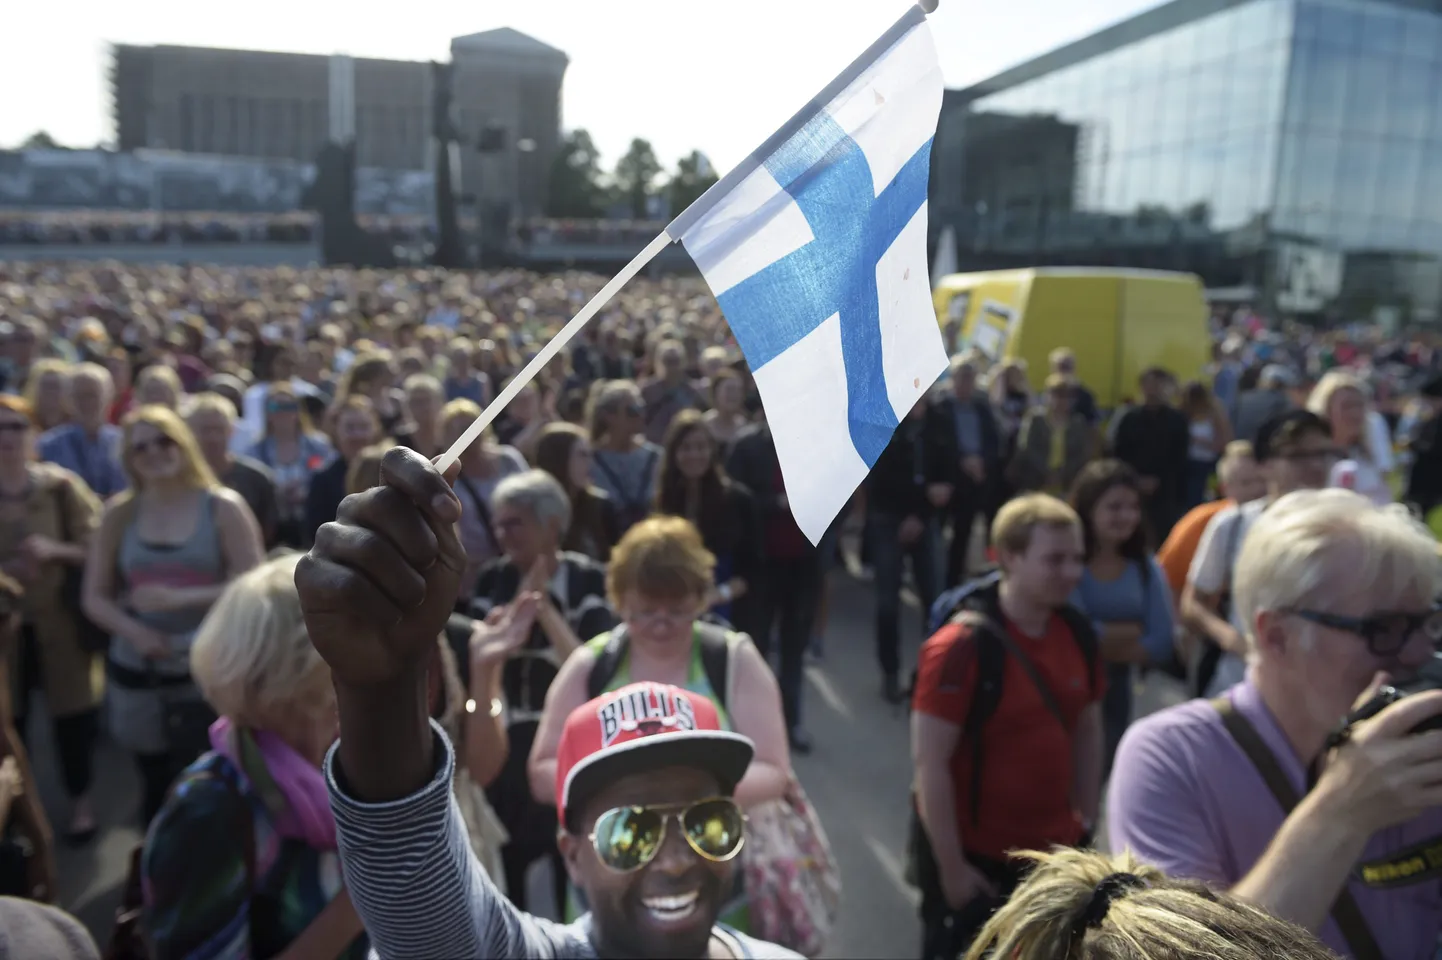 Soome lipp lehvimas musta naeruski kätes